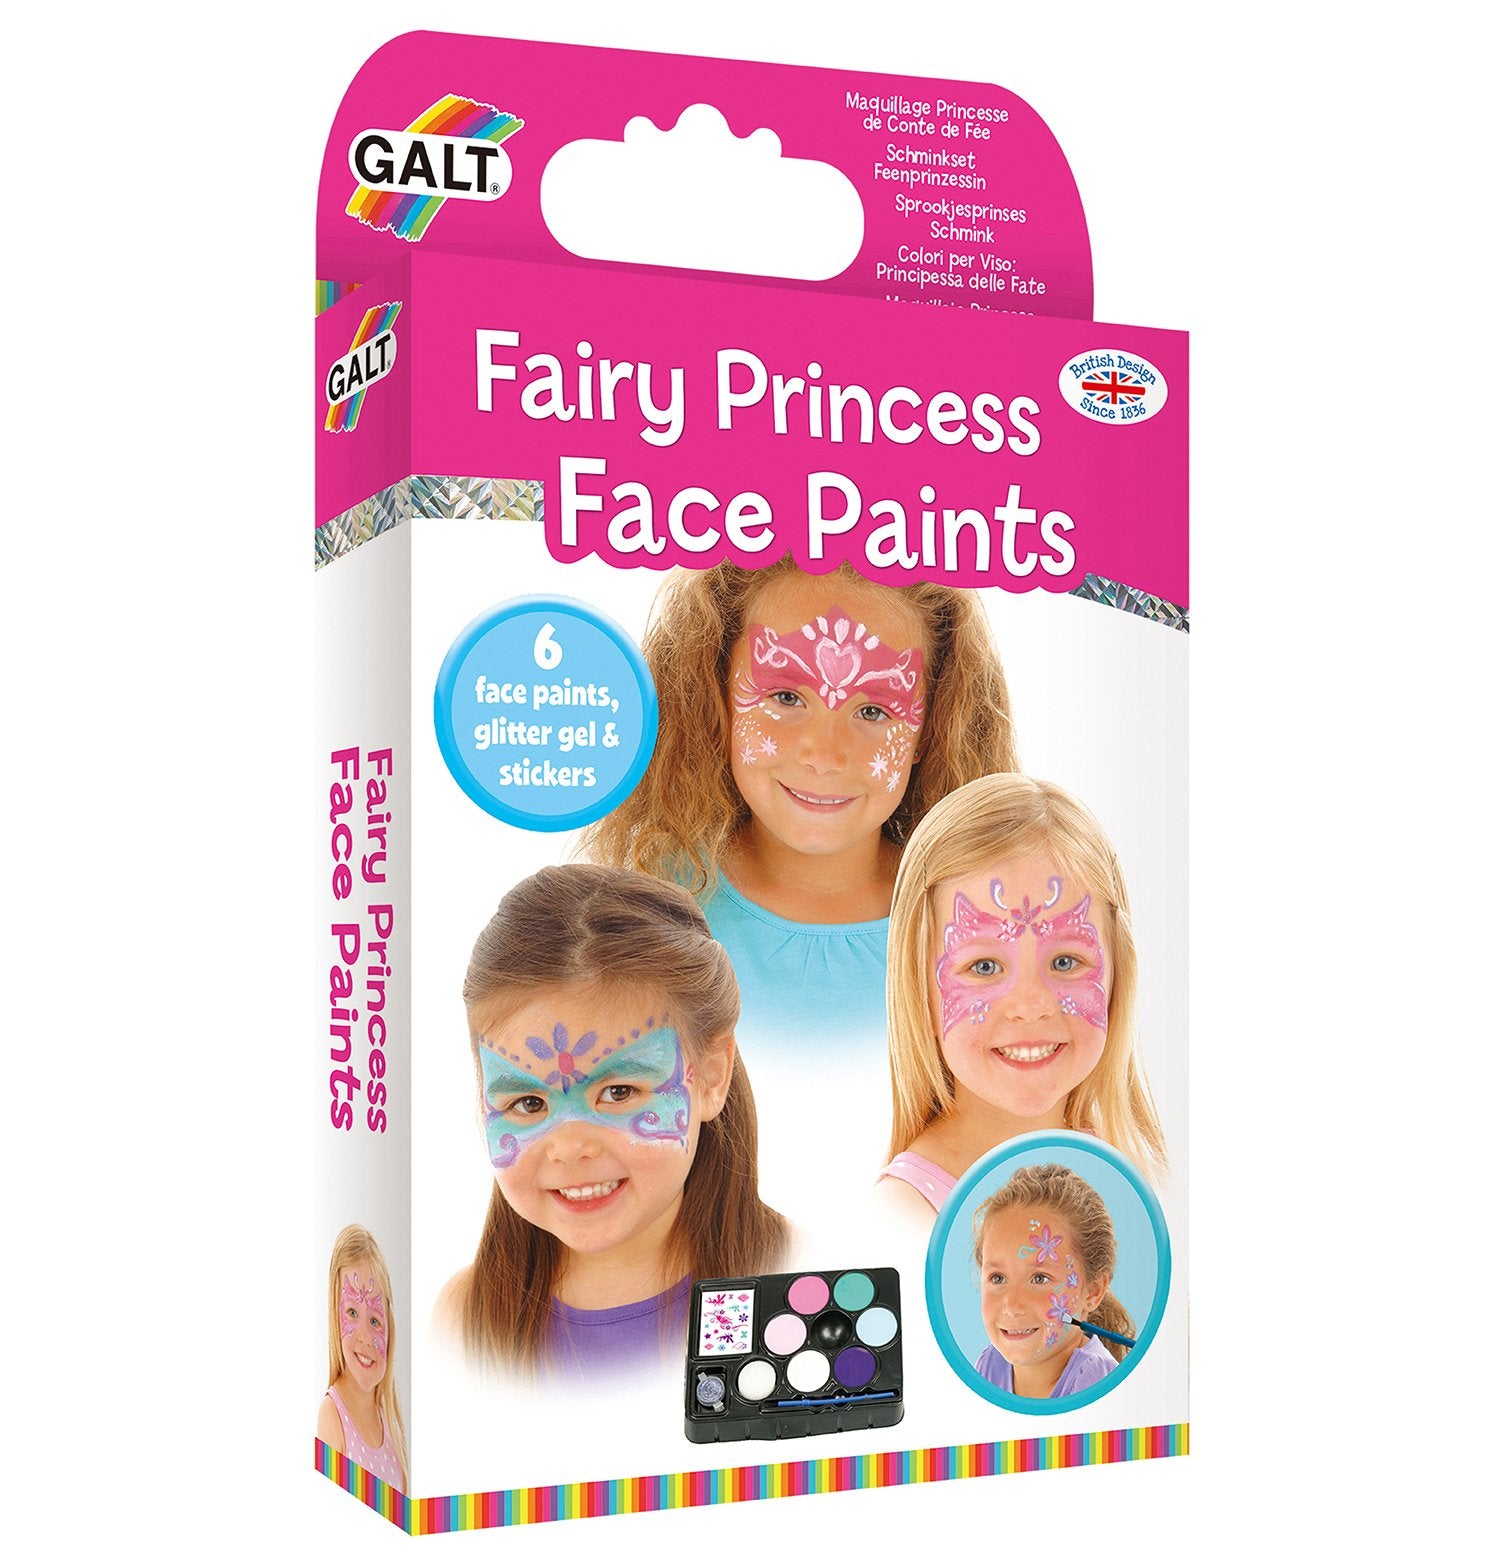 Fairy Princess Face Paints - Galt